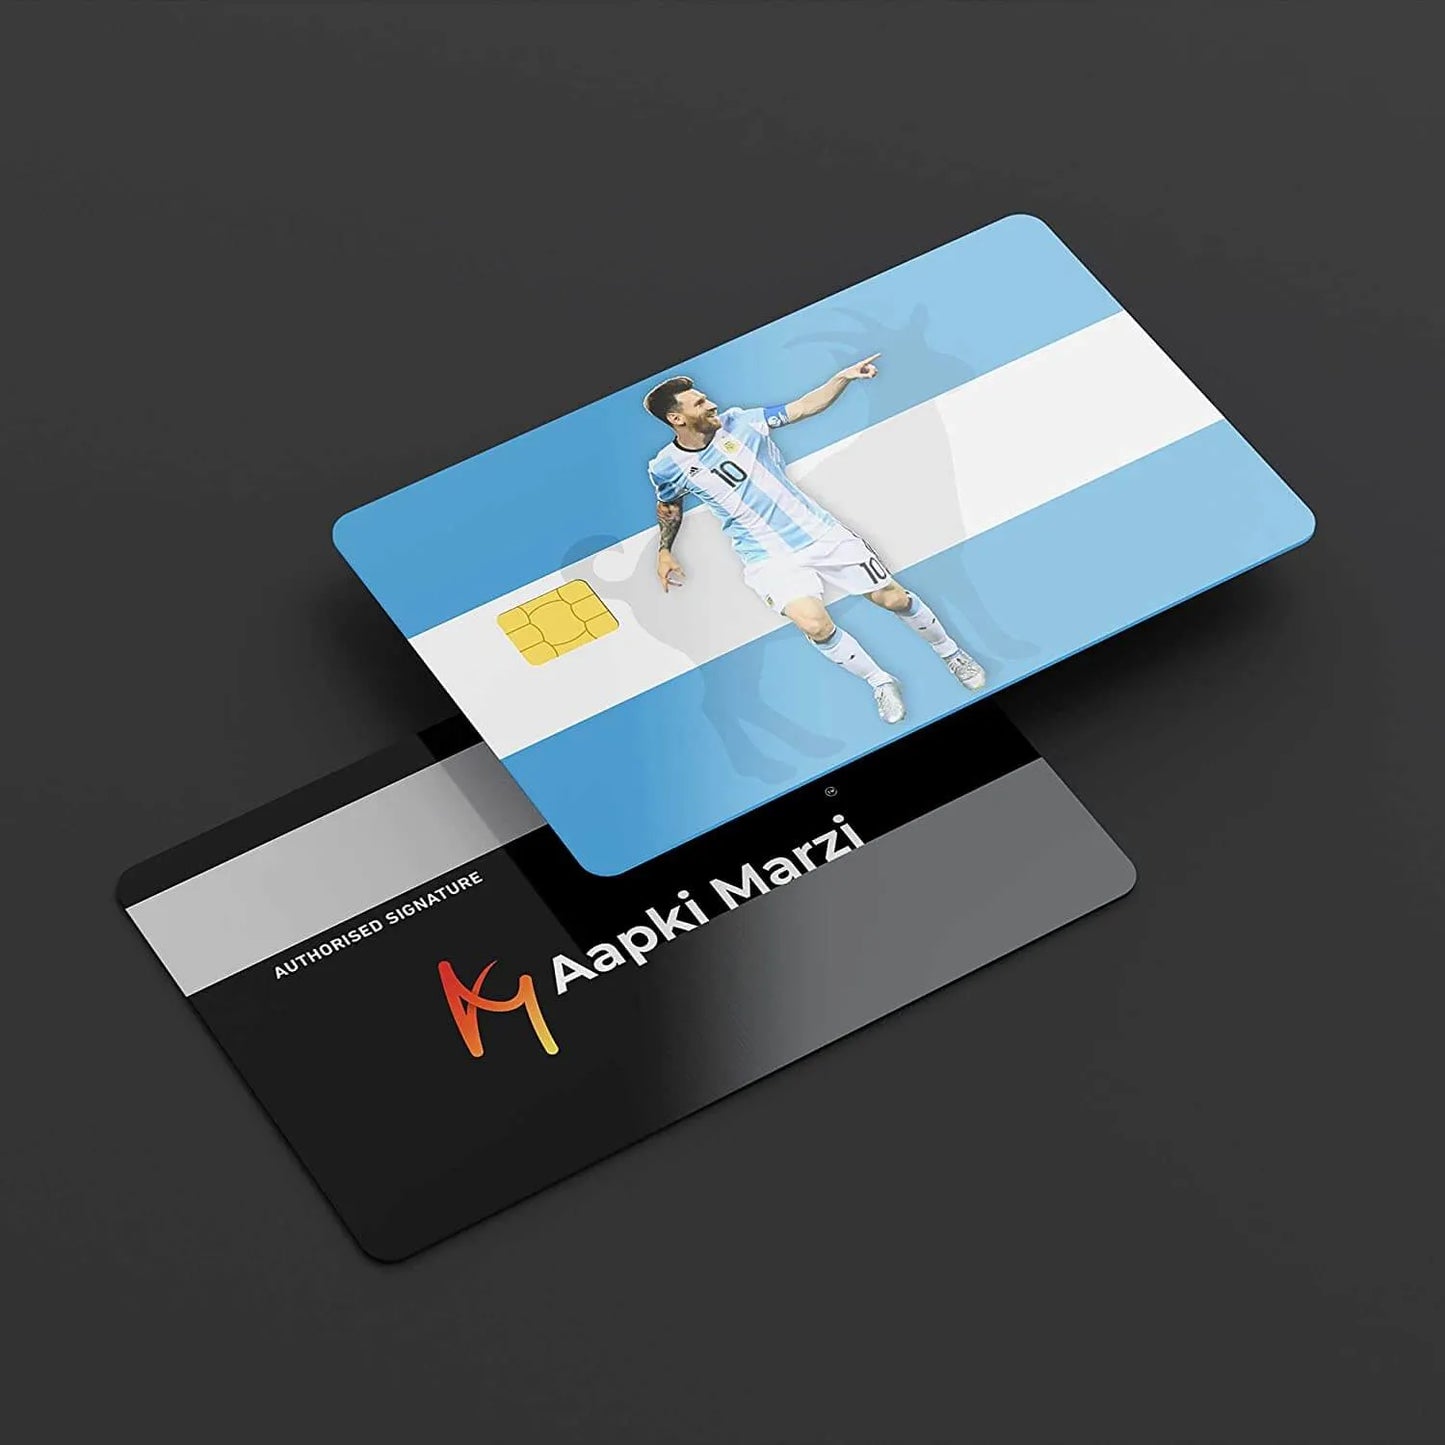 Messi Goat credit card skins 